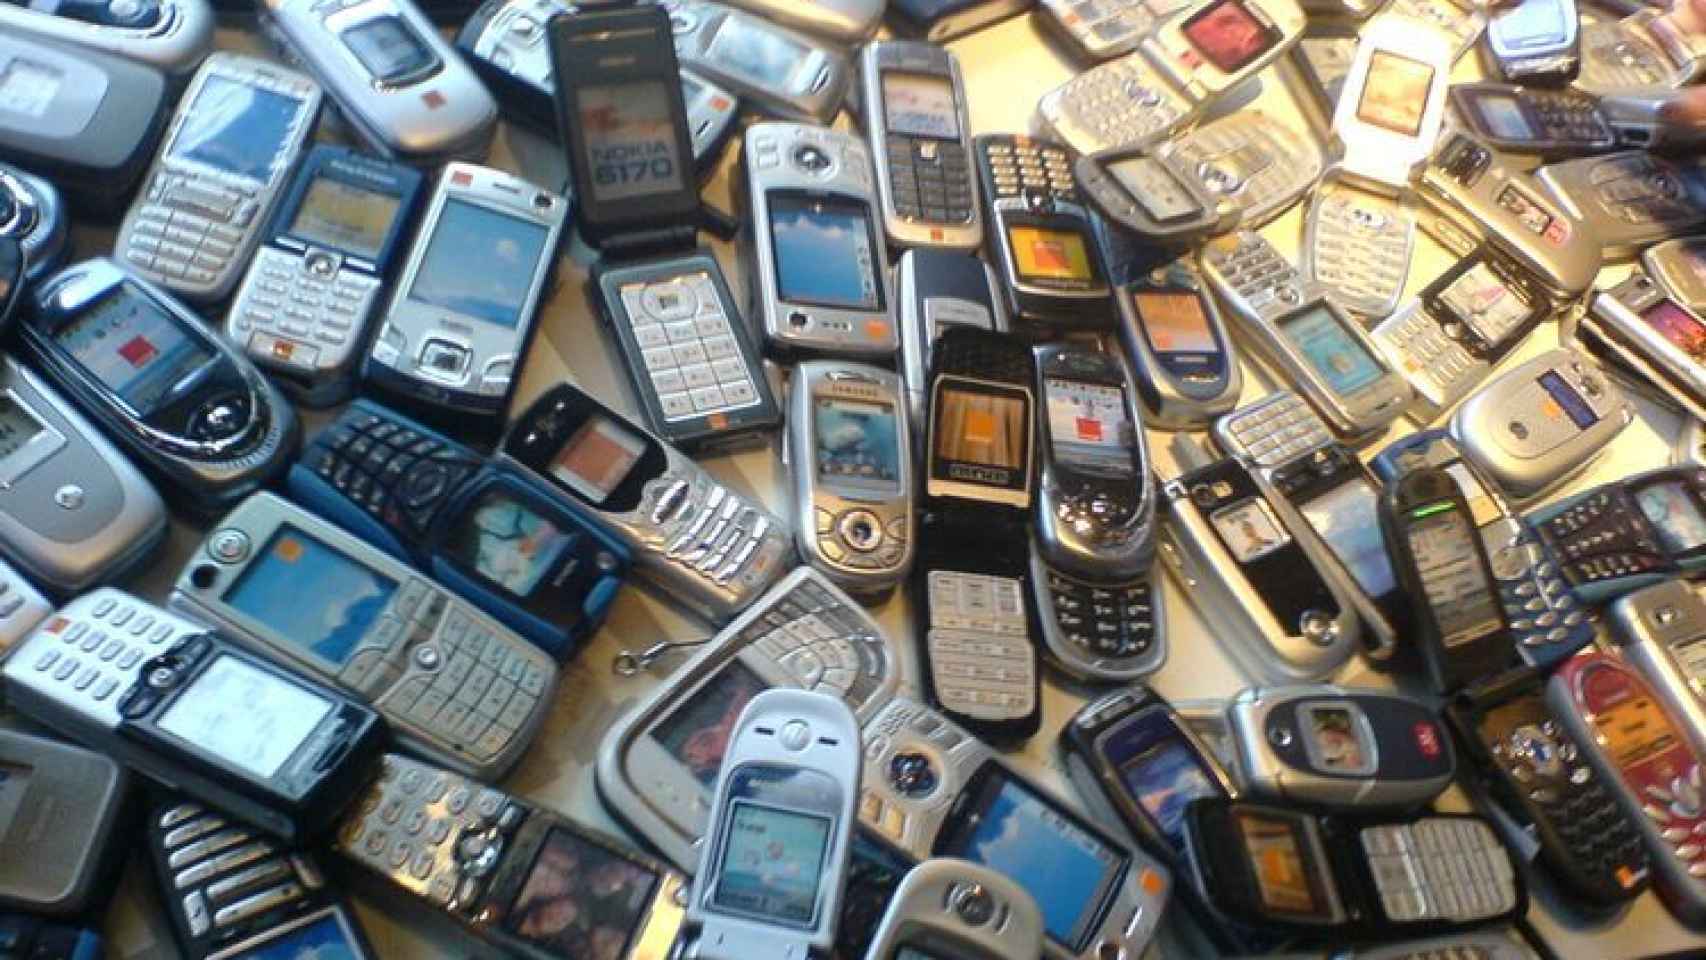 Qué hemos perdido respecto a los móviles antiguos